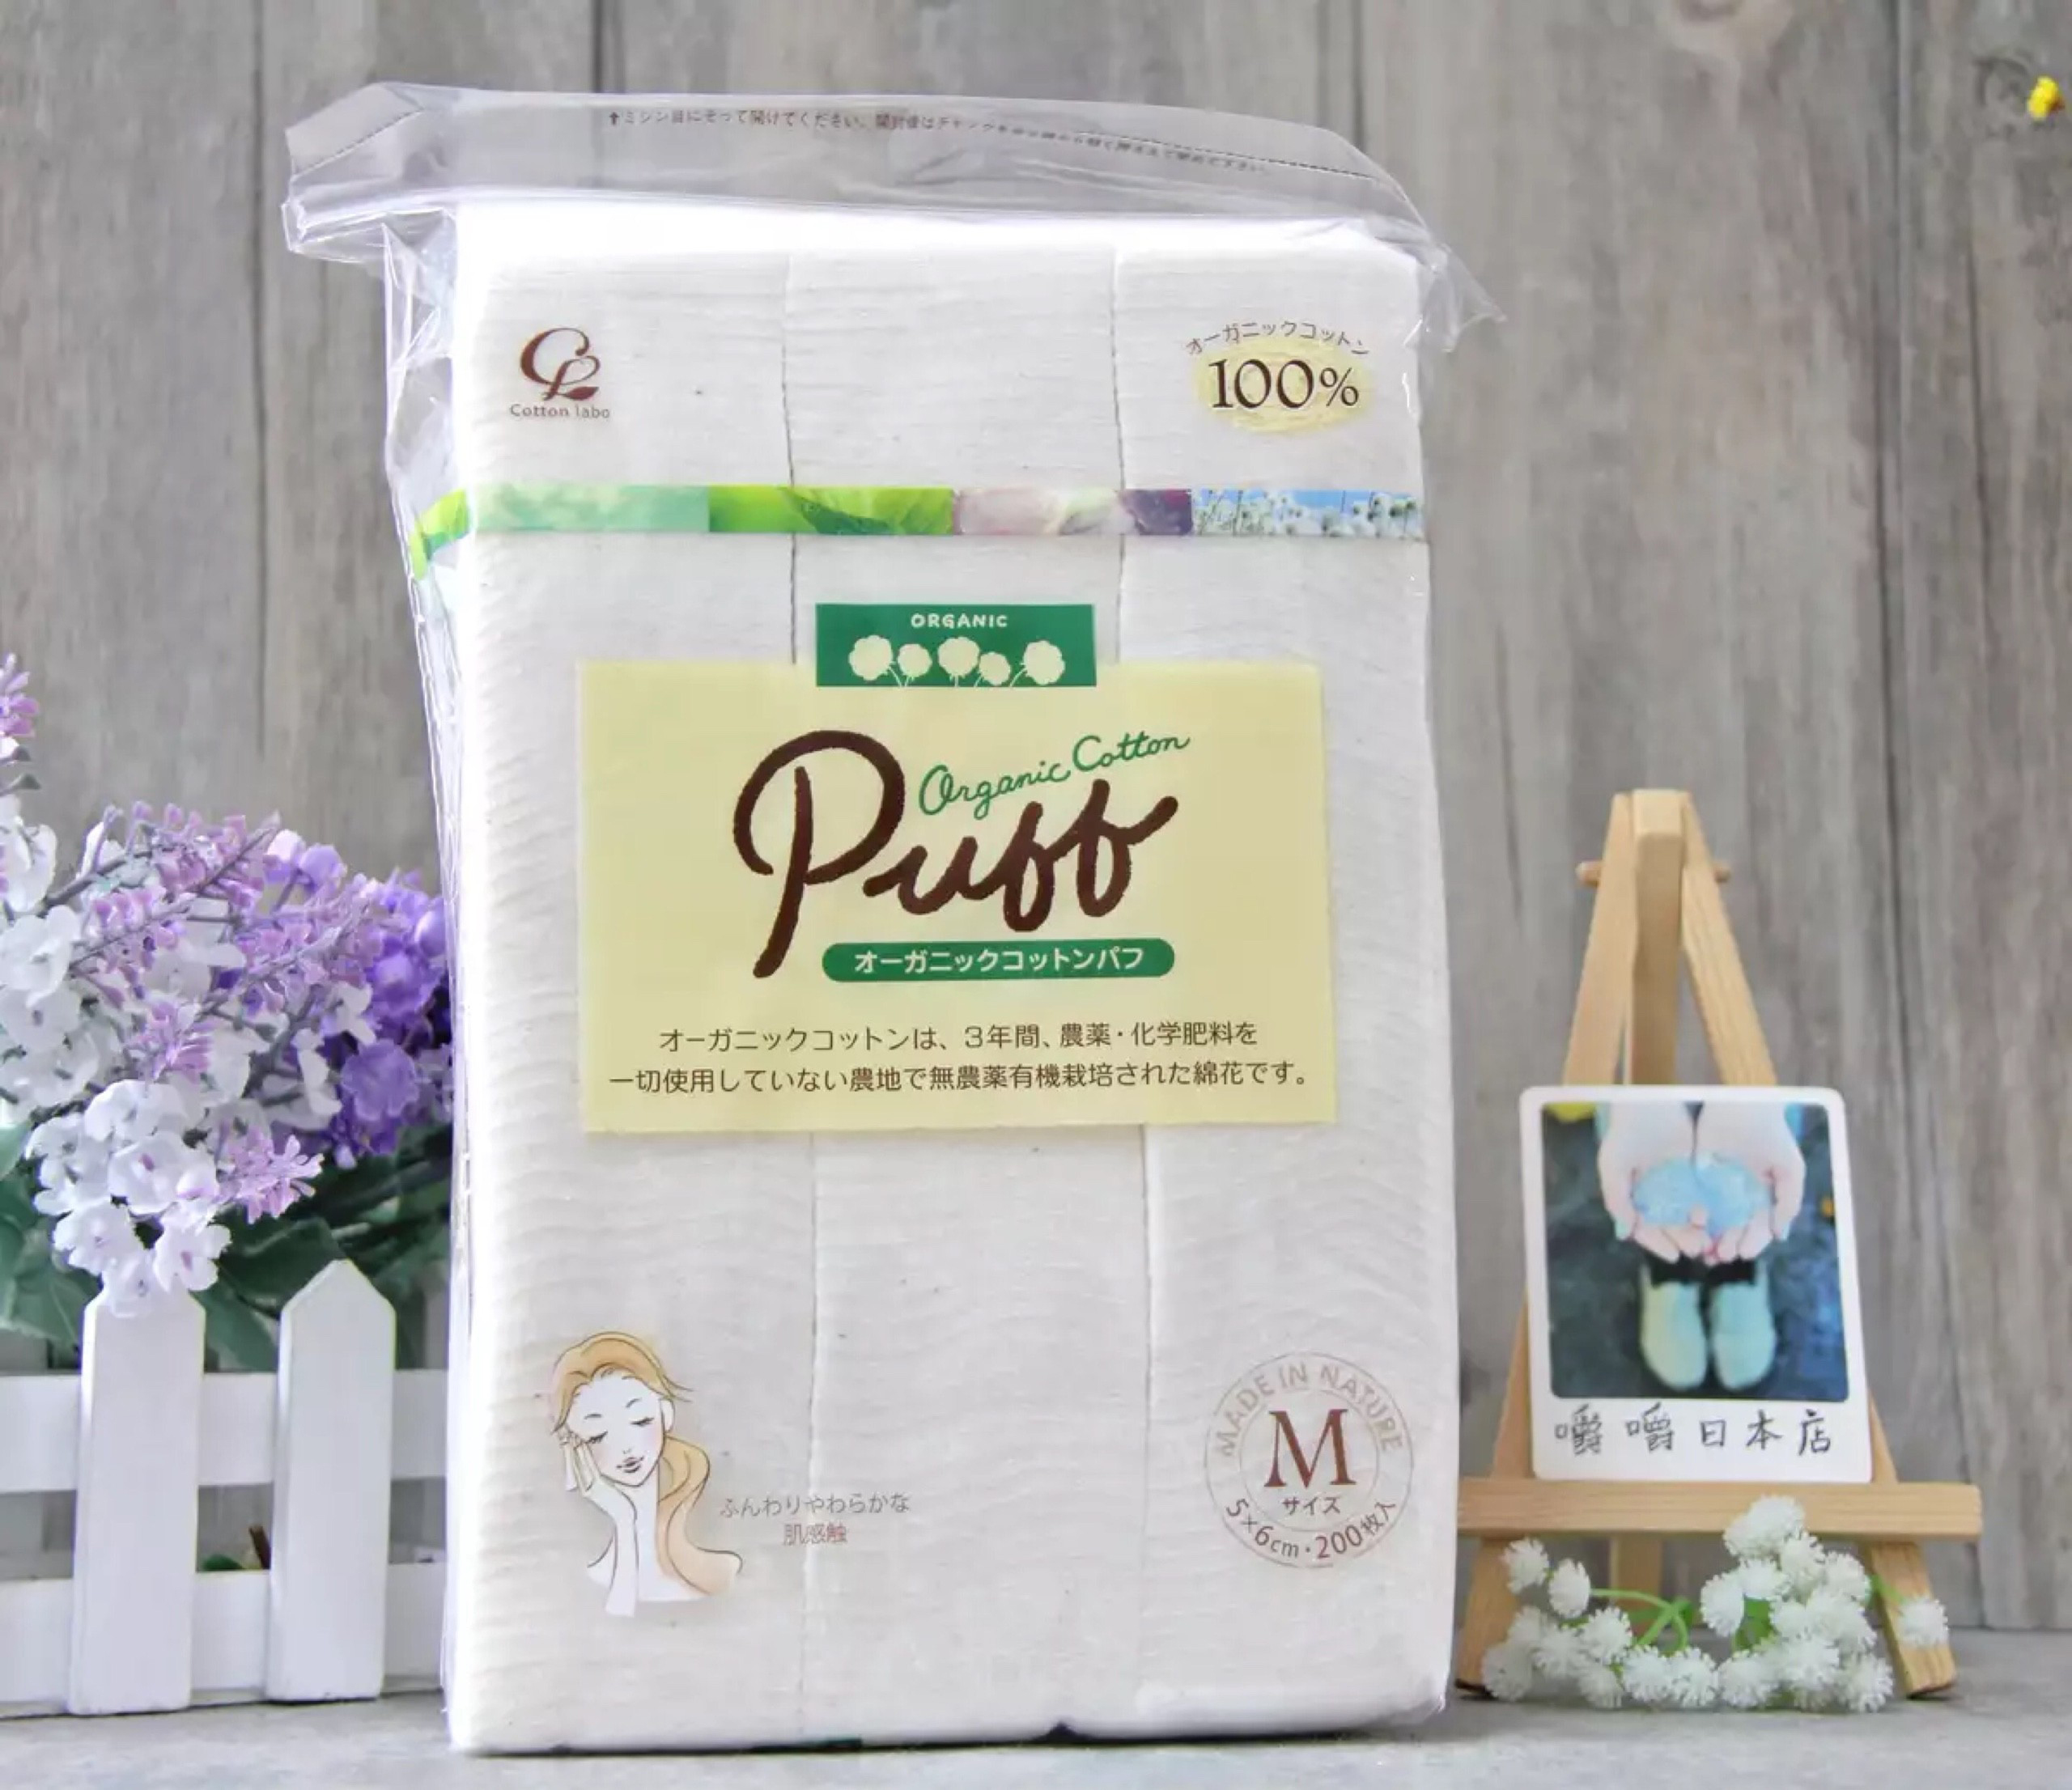 [Review] Bông tẩy trang organic cotton Puff Nhật size M – size L có tốt không? (updated 8/2021) | Shop Nhật Chaly